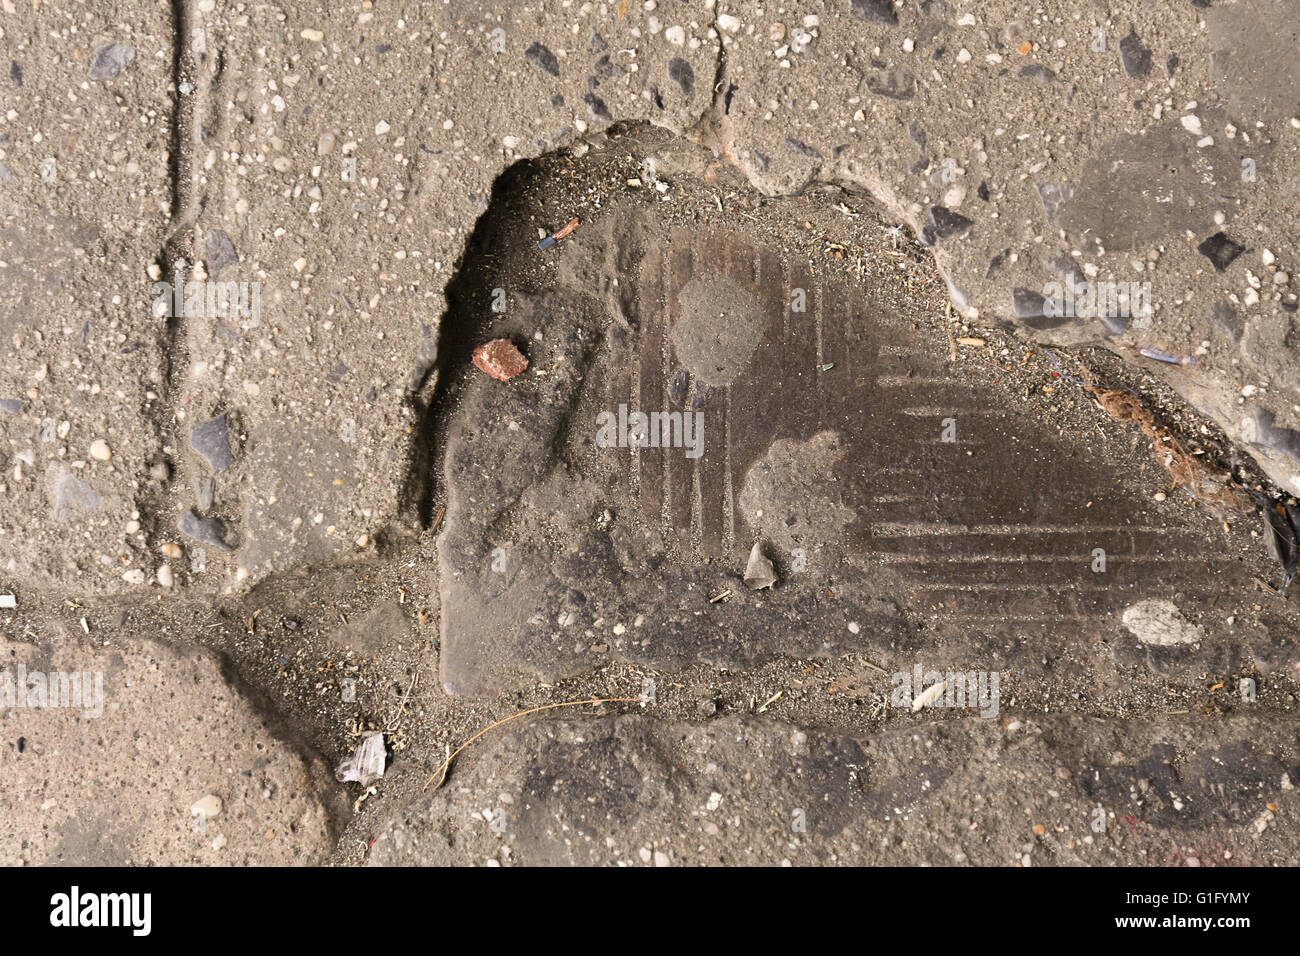 Béton écaillé révélant une plaque de métal en dessous, les combustibles, New York City Banque D'Images